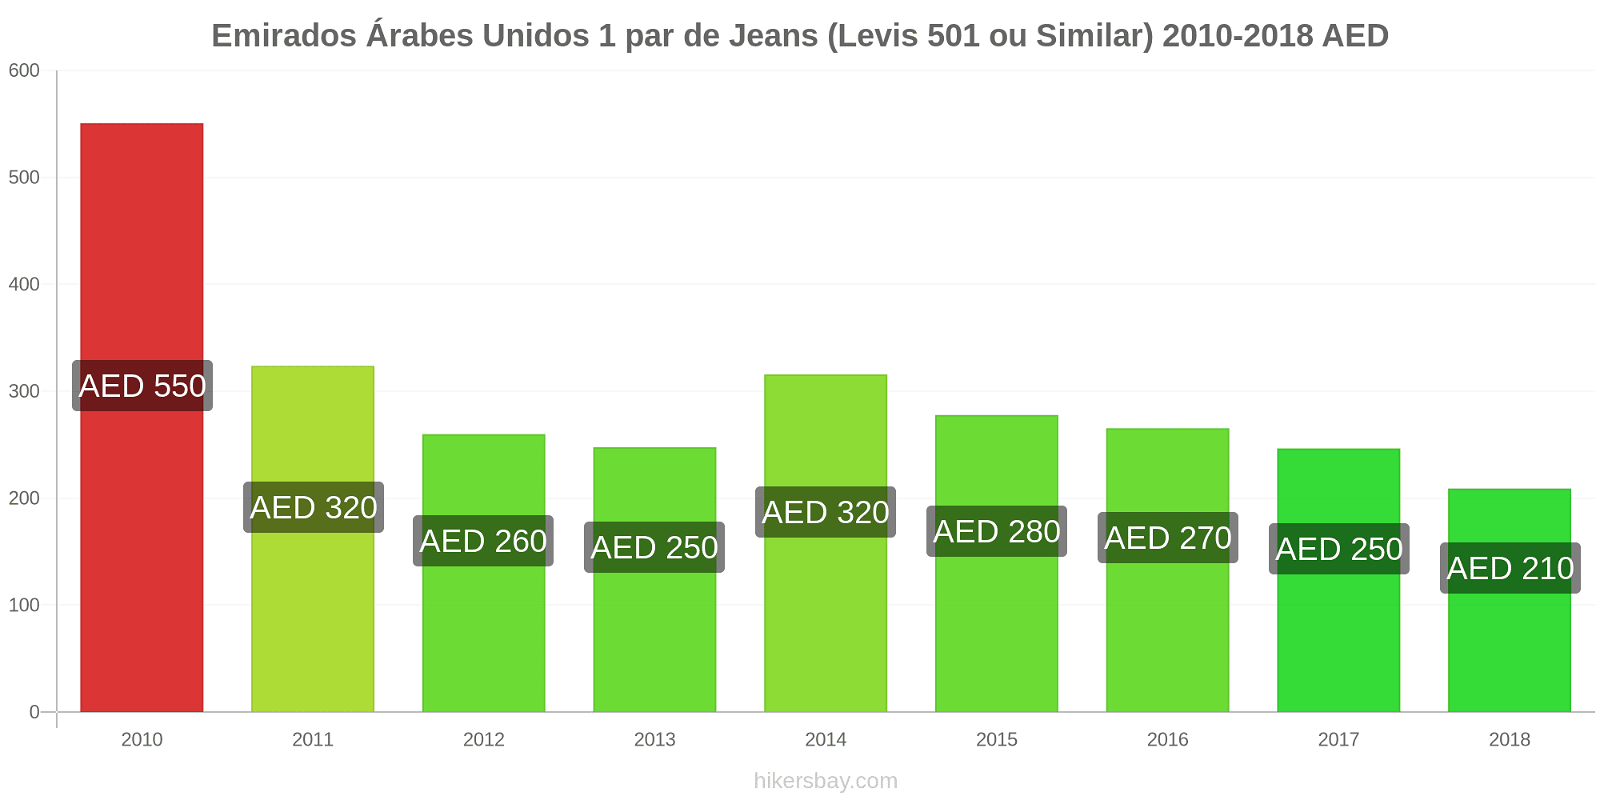 Emirados Árabes Unidos mudanças de preços 1 par de jeans (Levis 501 ou similares) hikersbay.com